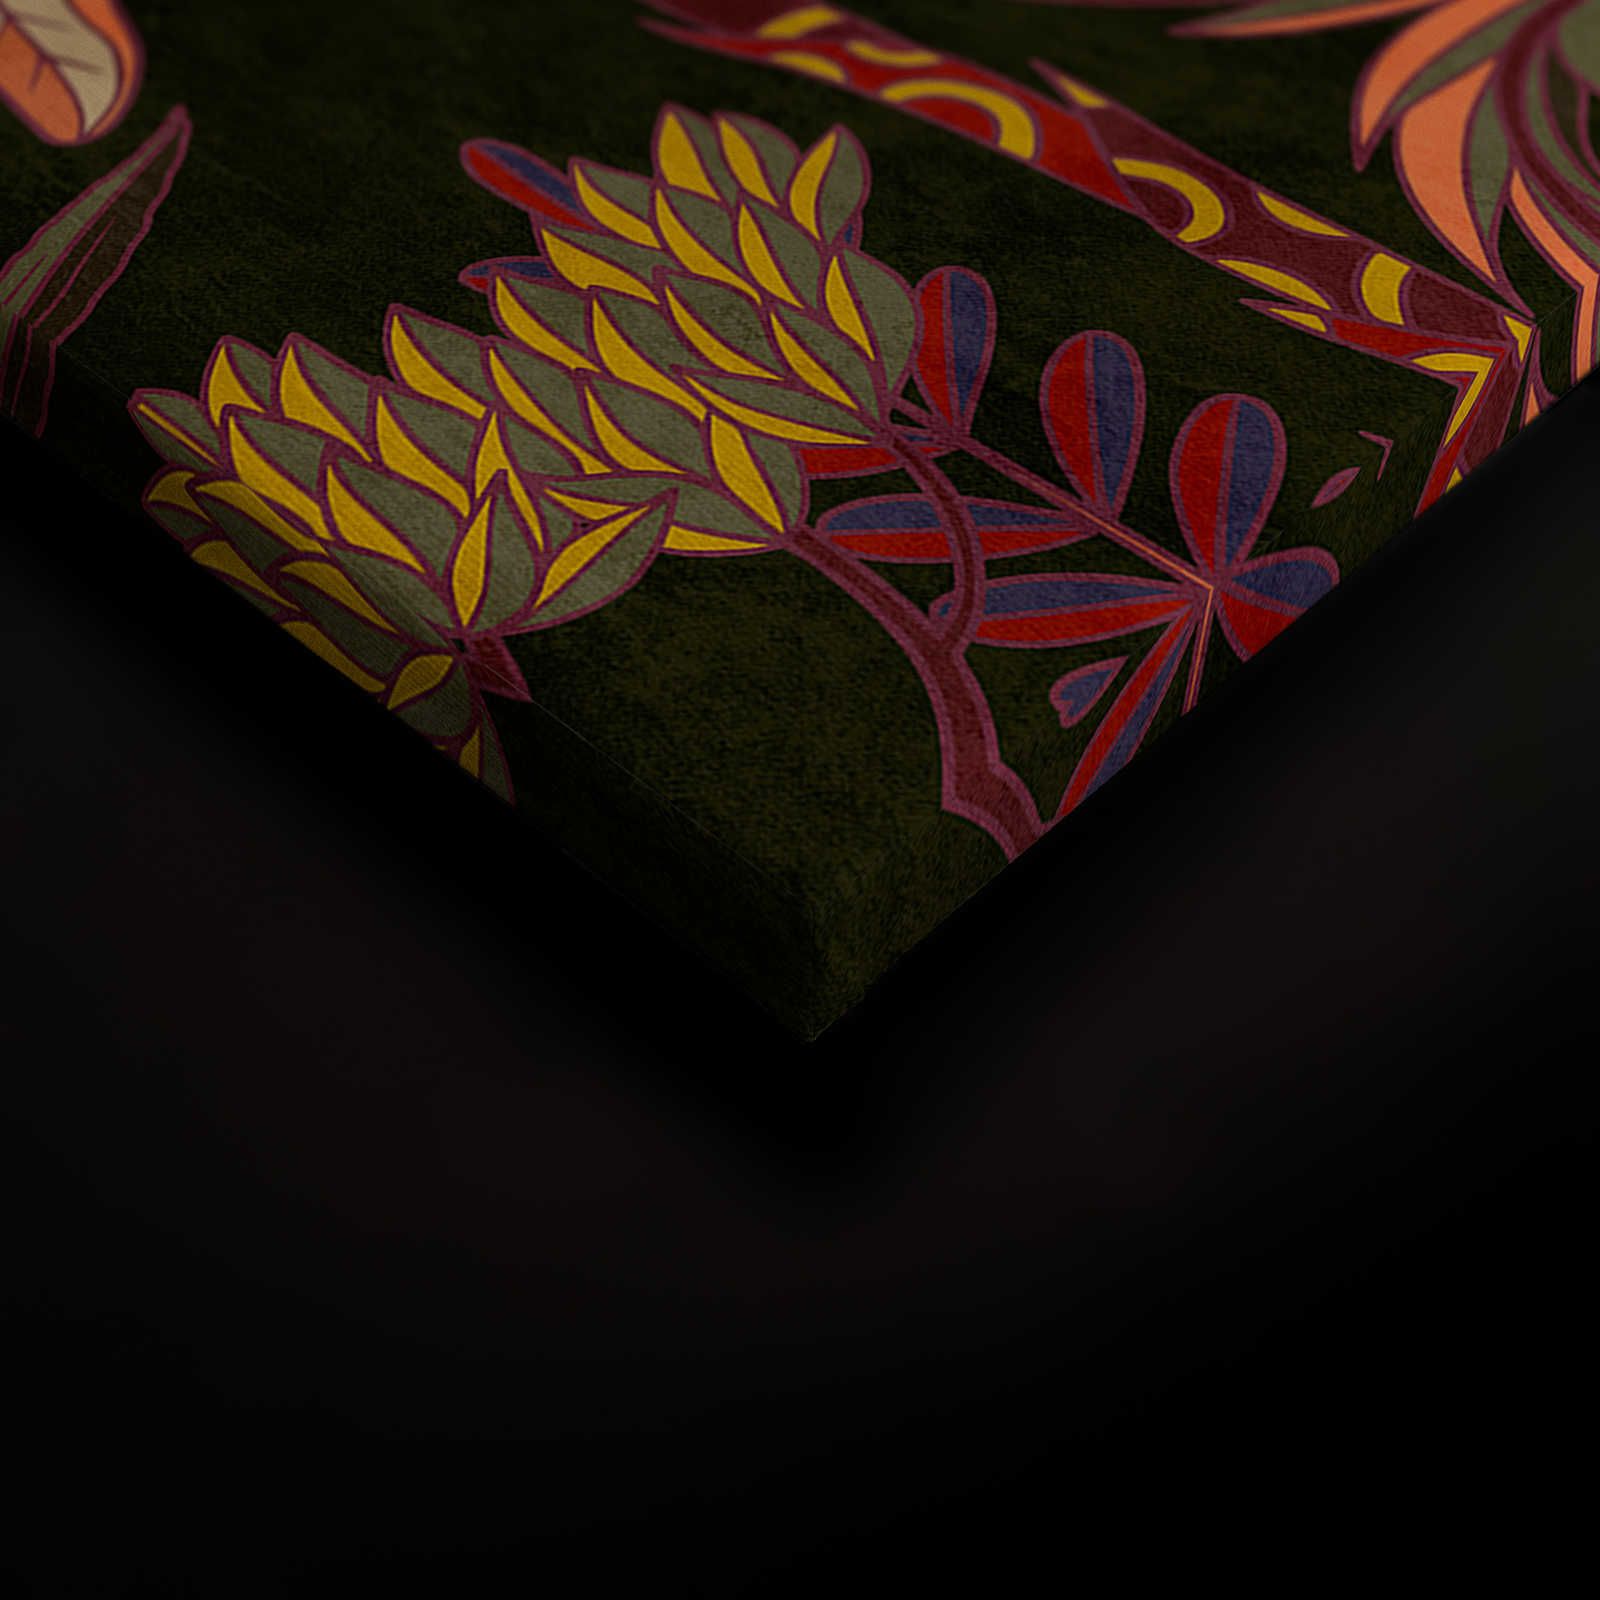             Lagos 1 - Palmbomen canvas schilderij kleurrijke grafische stijl in textiel look - 0,90 m x 0,60 m
        